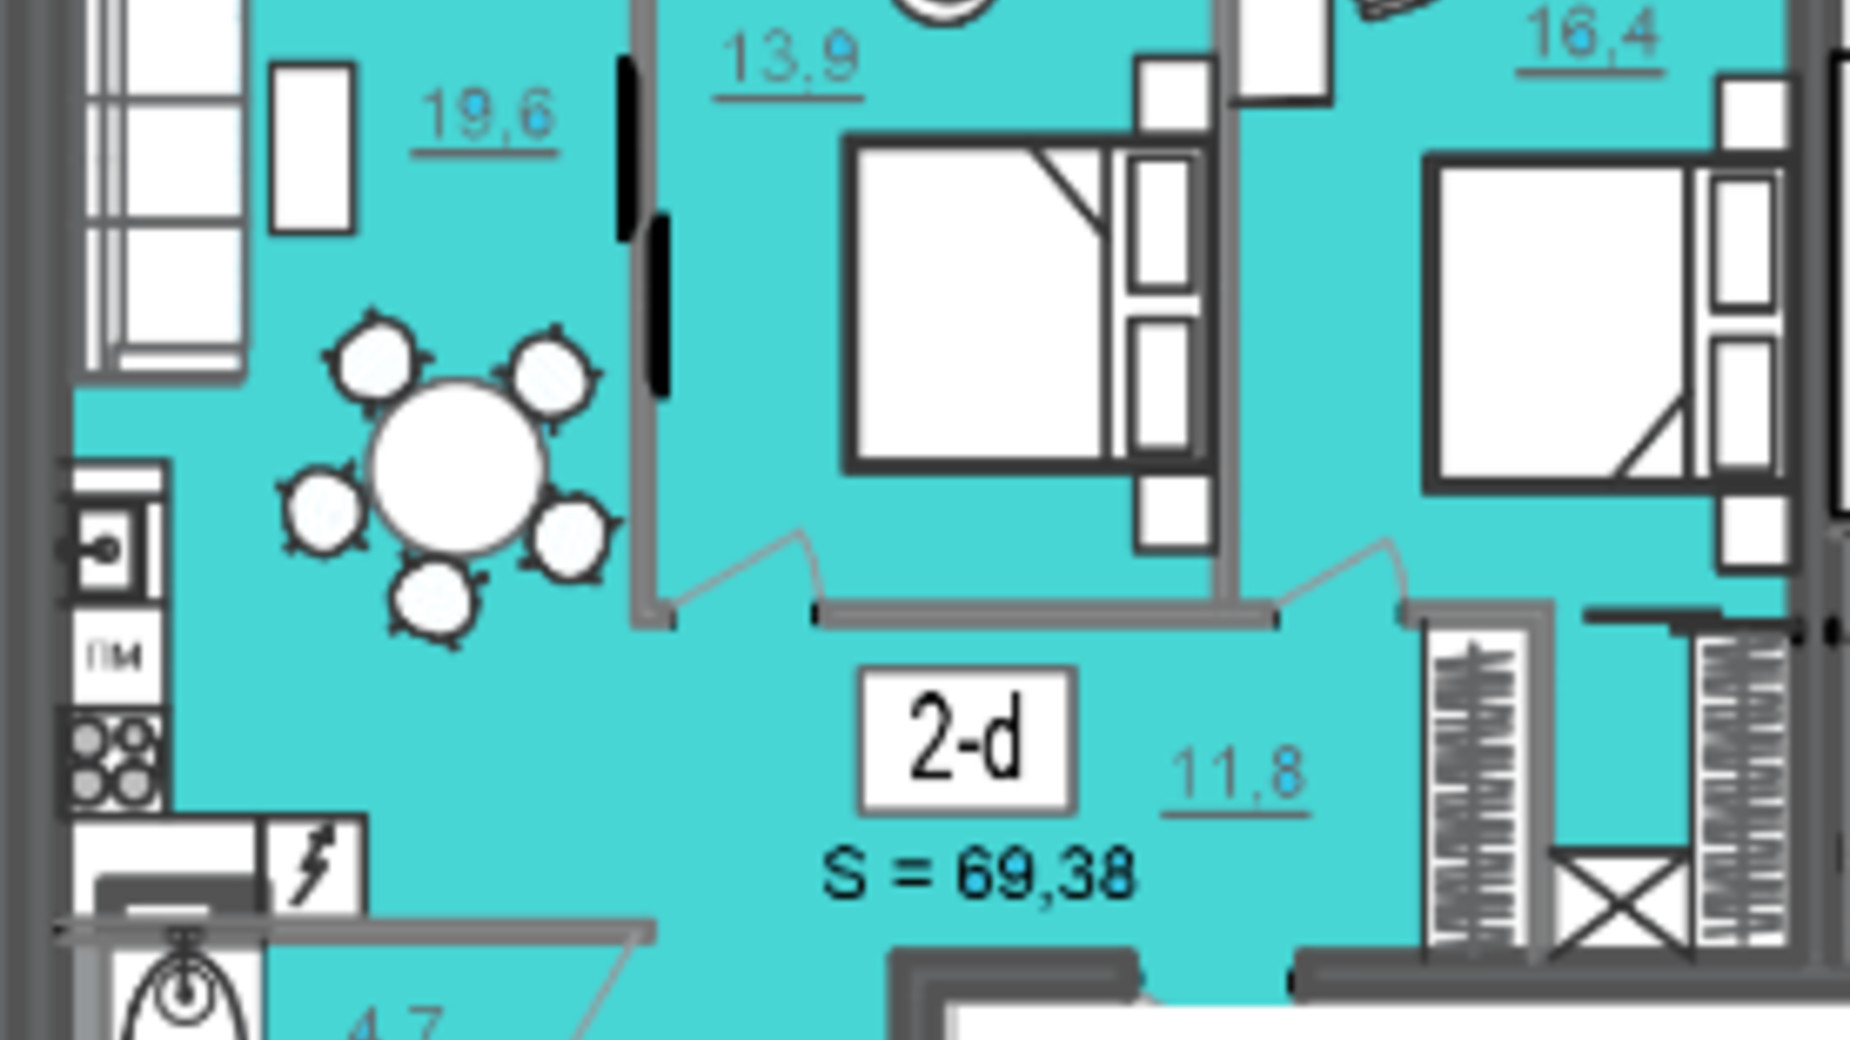 Планировка 2-комнатной квартиры в МФК Cite 69.38 м², фото 350397